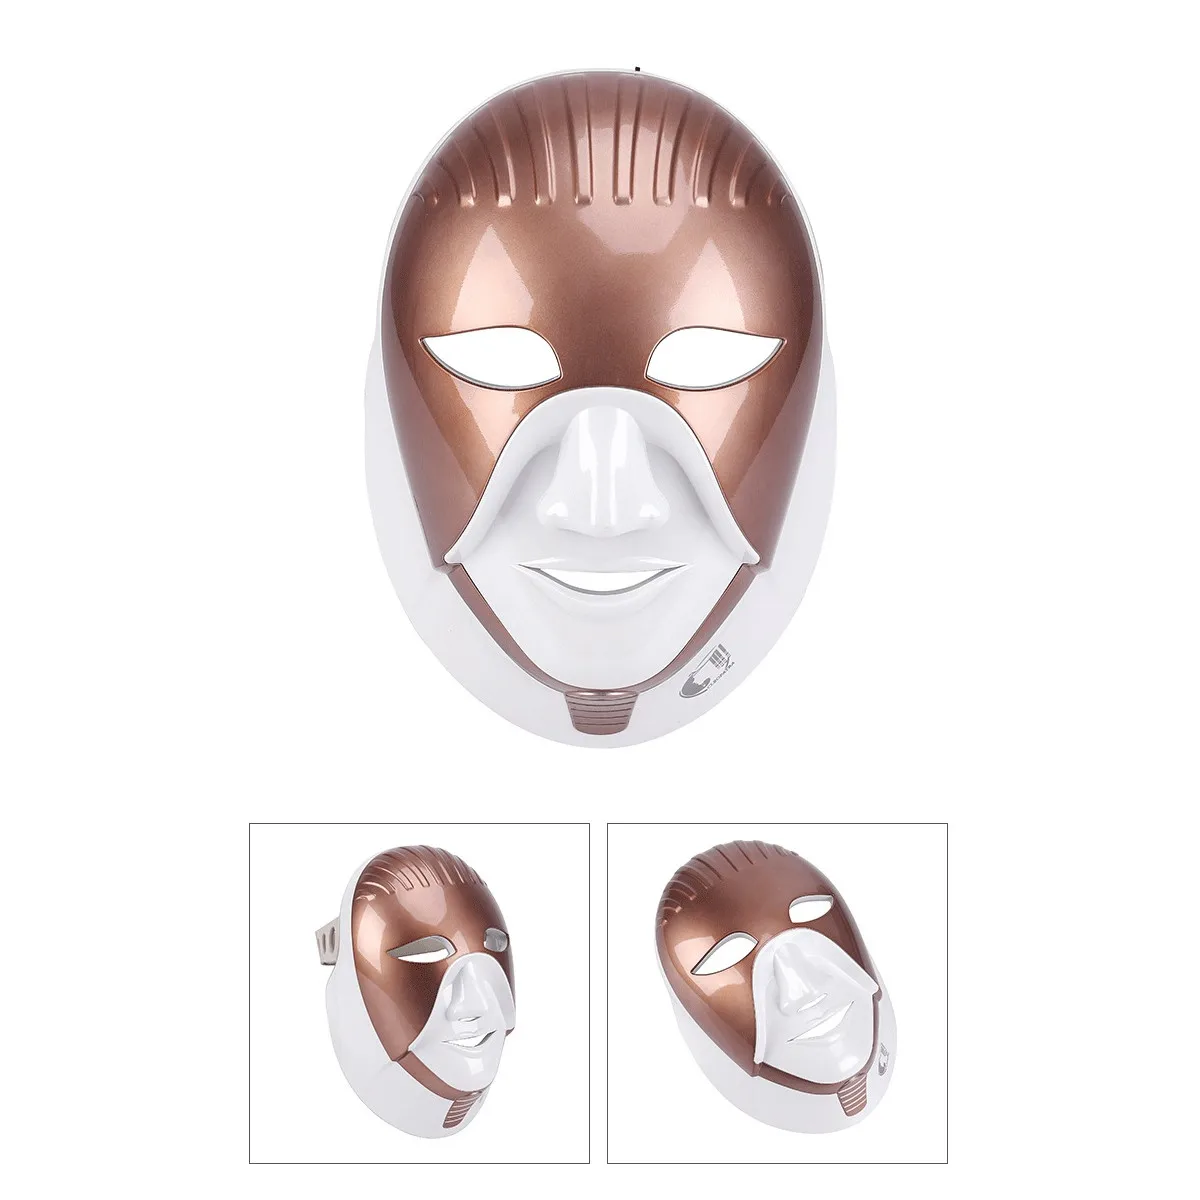 Foreverlily перезаряжаемая 7 цветов Светодиодная маска для ухода за кожей светодиодная маска для лица с горлышком в египетском стиле фотонная терапия для лица красота